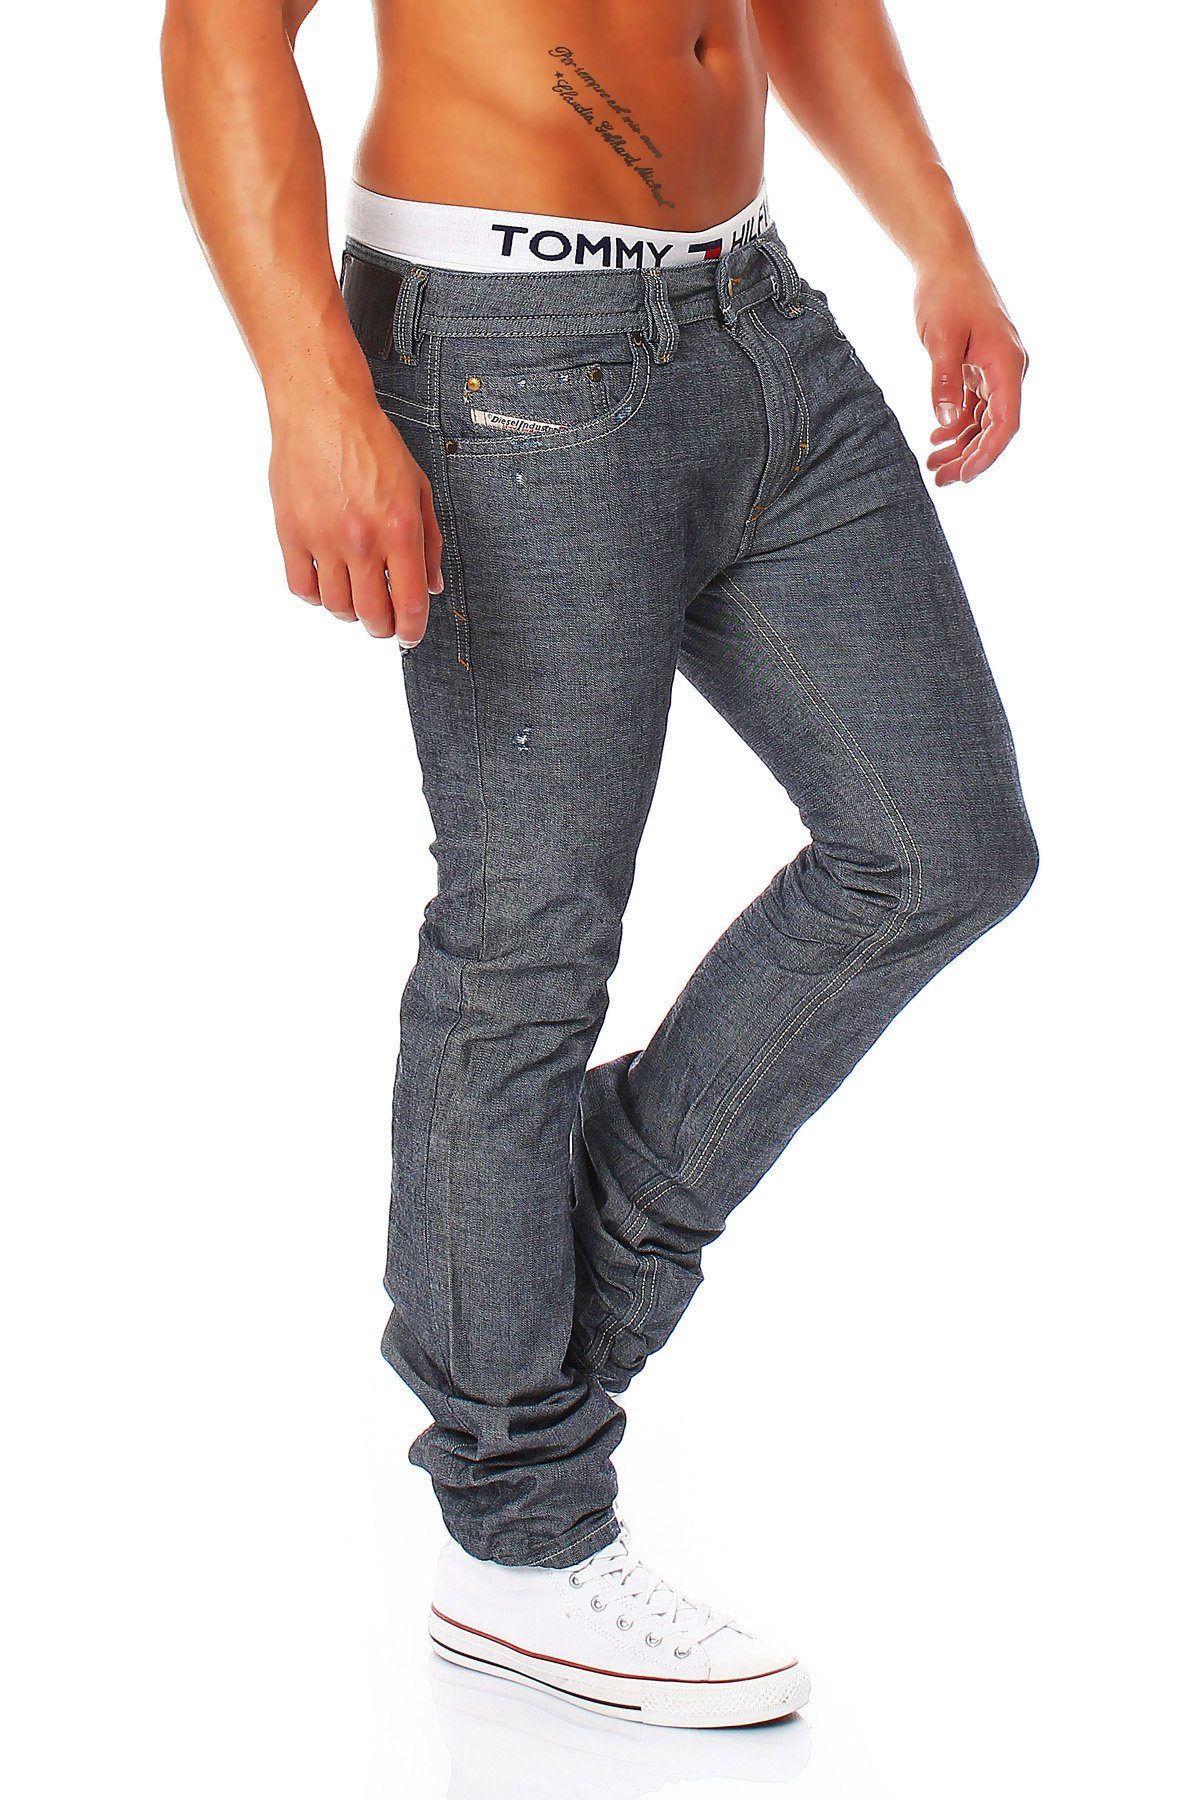 Slim-fit-Jeans Röhrenjeans, Style, Thavar Diesel 0809D Blau-Grau, Pocket 5 Used-Look Dezenter Herren